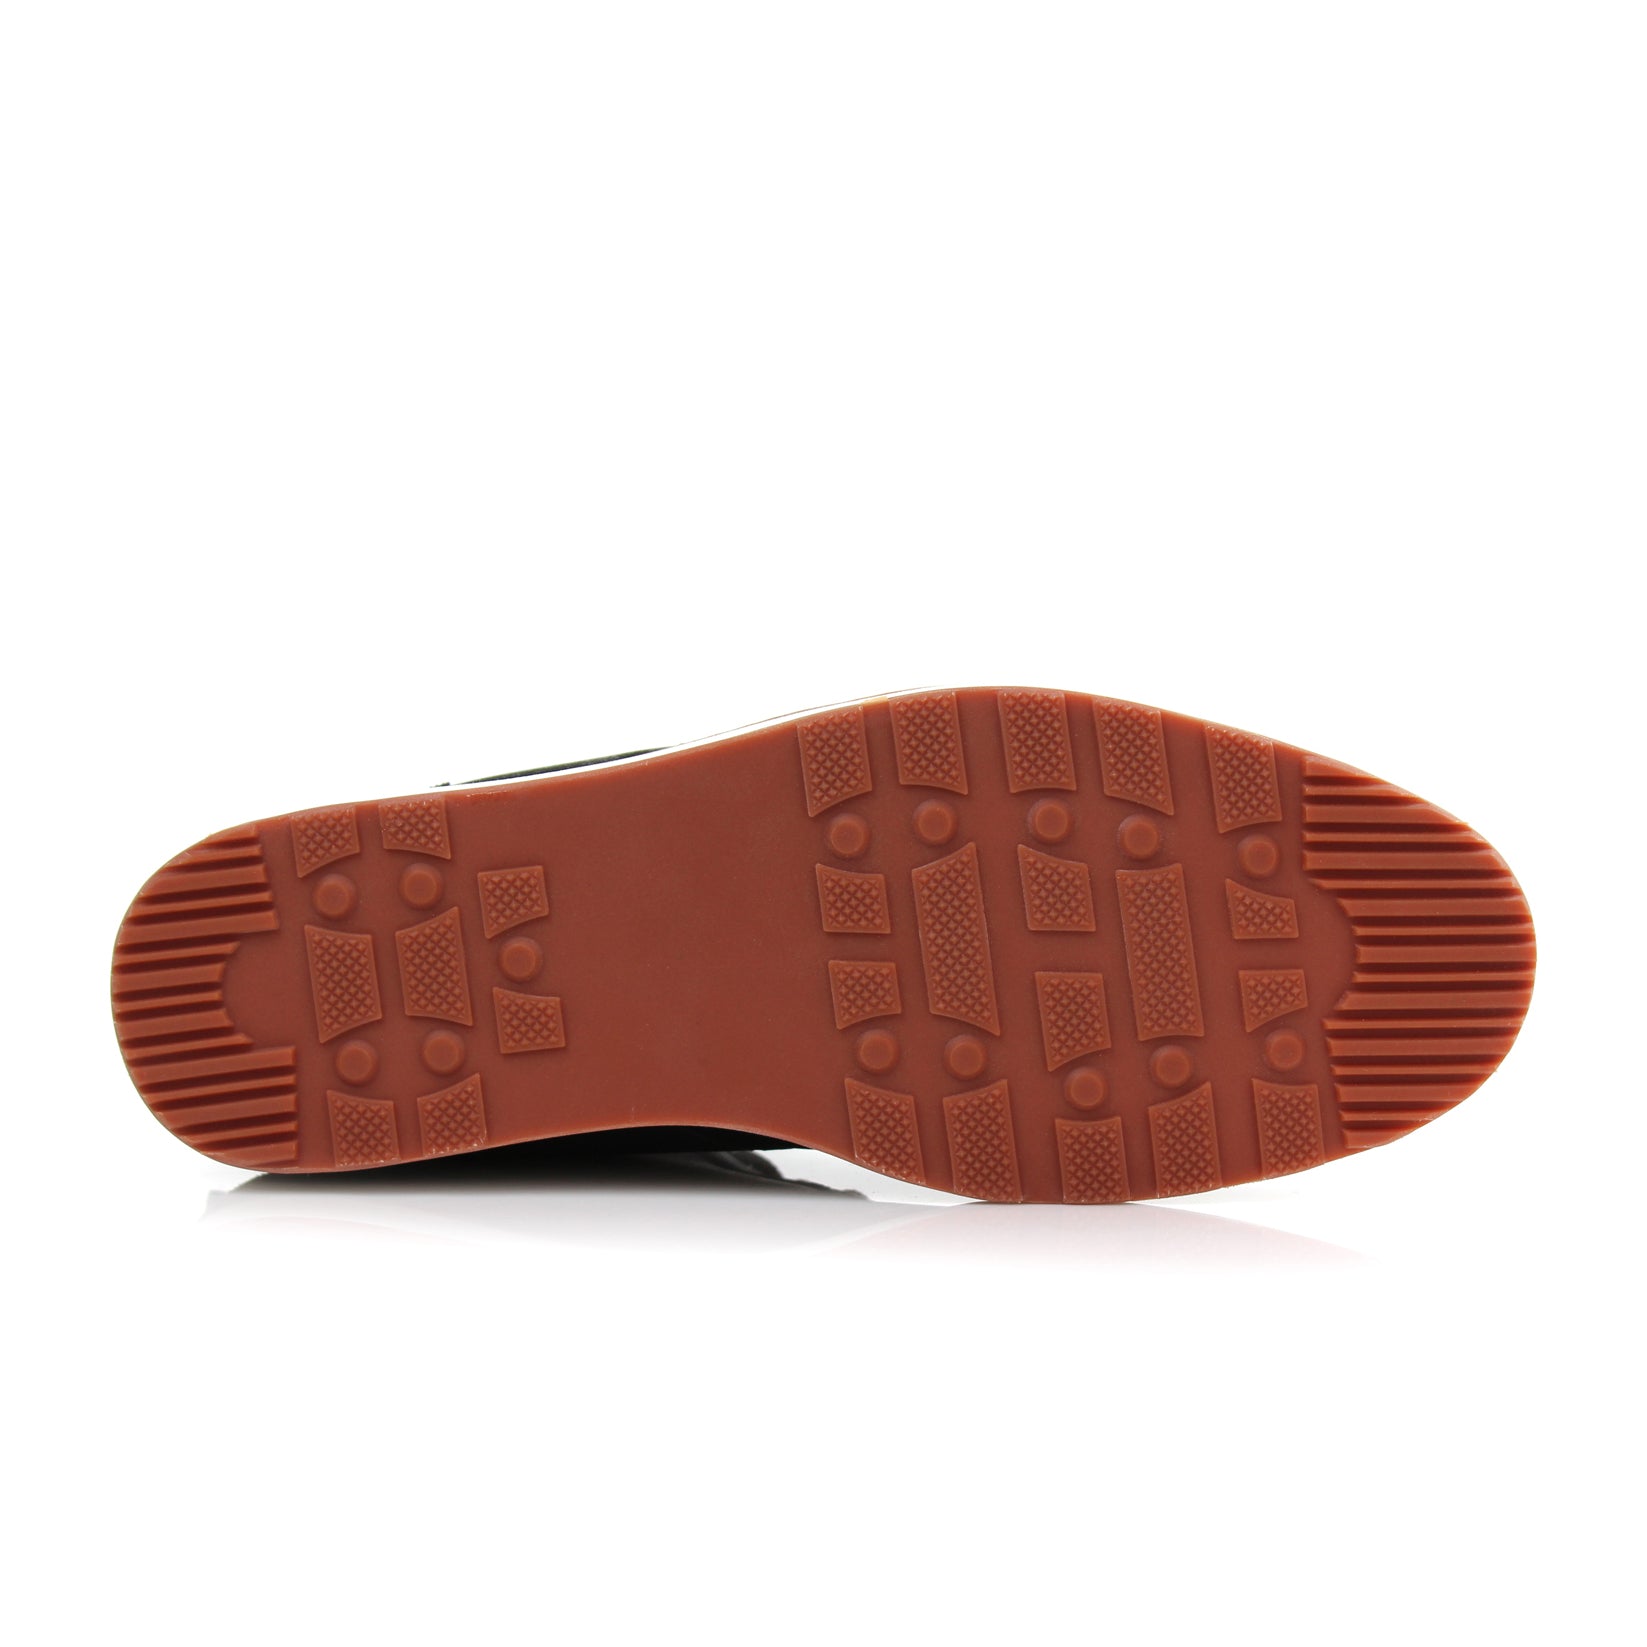 Sneaker Chukka Boots | Houstan by Ferro Aldo | Conal Footwear | Bottom Sole Angle View